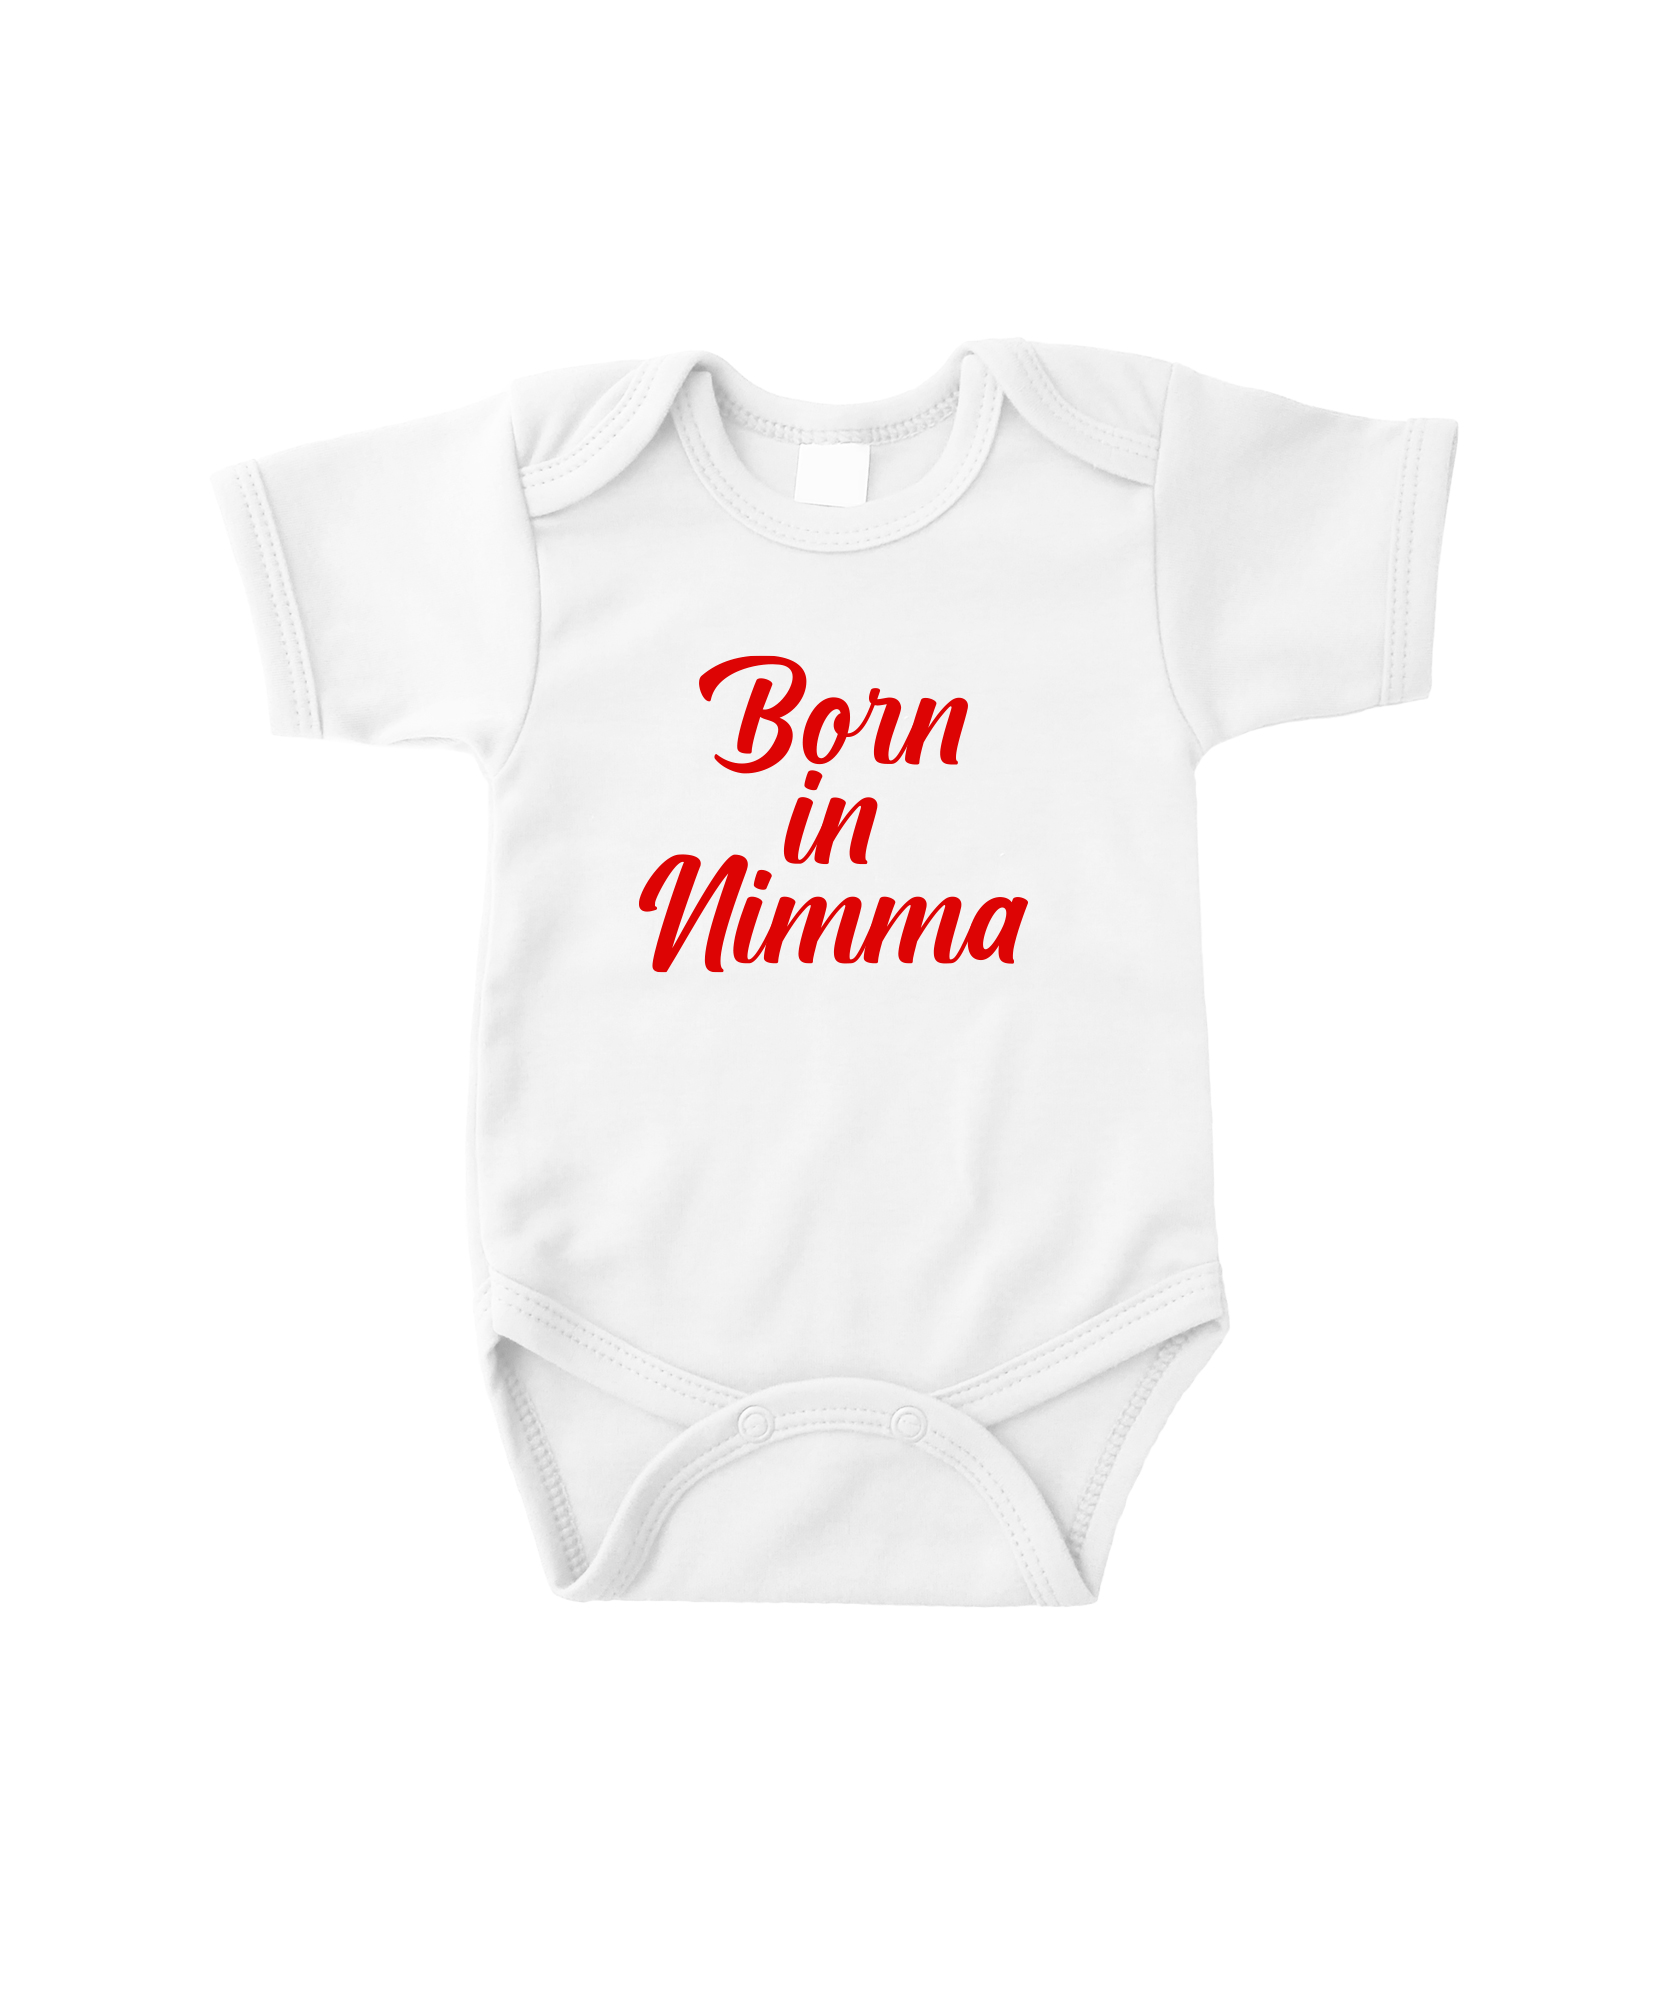 ILOVENIJMEGEN - Romper - Born In Nimma - White/red